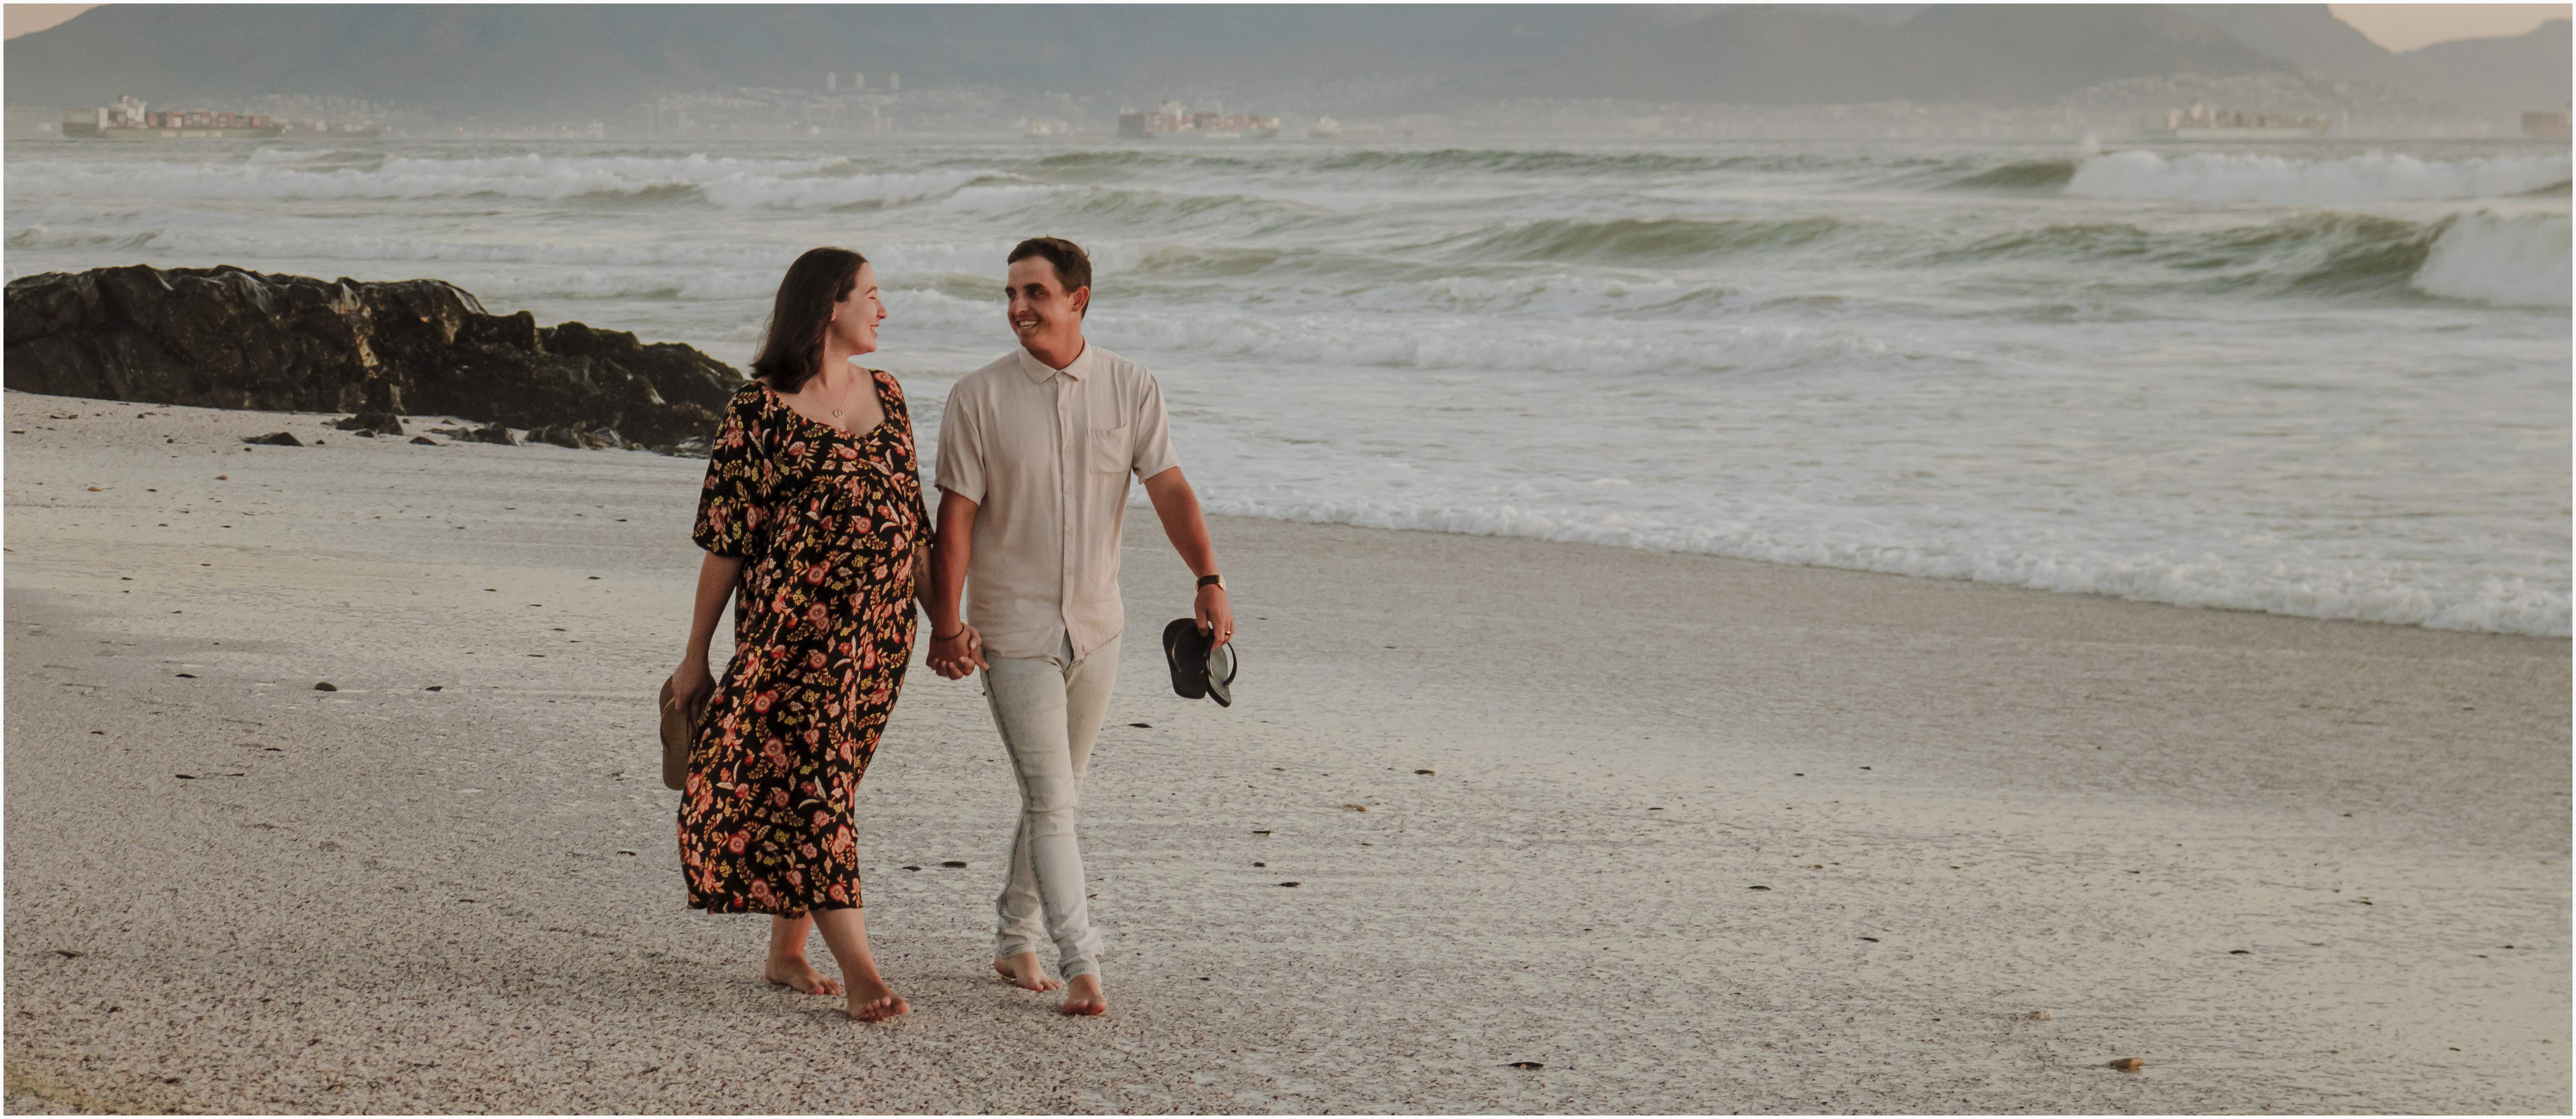 Meet Kristen-Jade & Joshua {A Sunset Maternity Session at Derdesteen Beach}